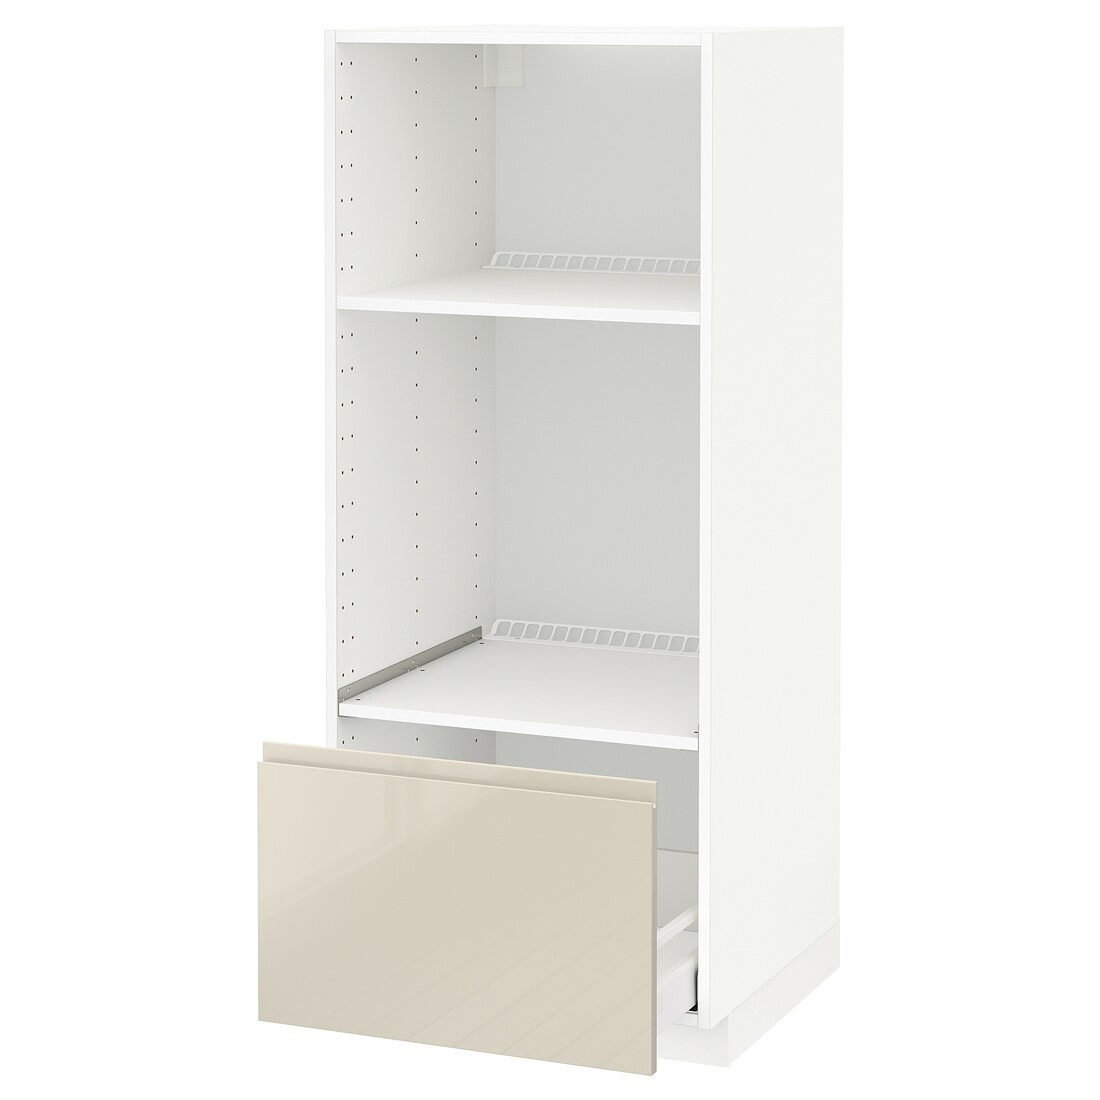 IKEA METOD МЕТОД / MAXIMERA МАКСИМЕРА Высокий шкаф для духовки / СВЧ, белый / Voxtorp глянцевый светло-бежевый, 60x60x140 см 99143632 991.436.32